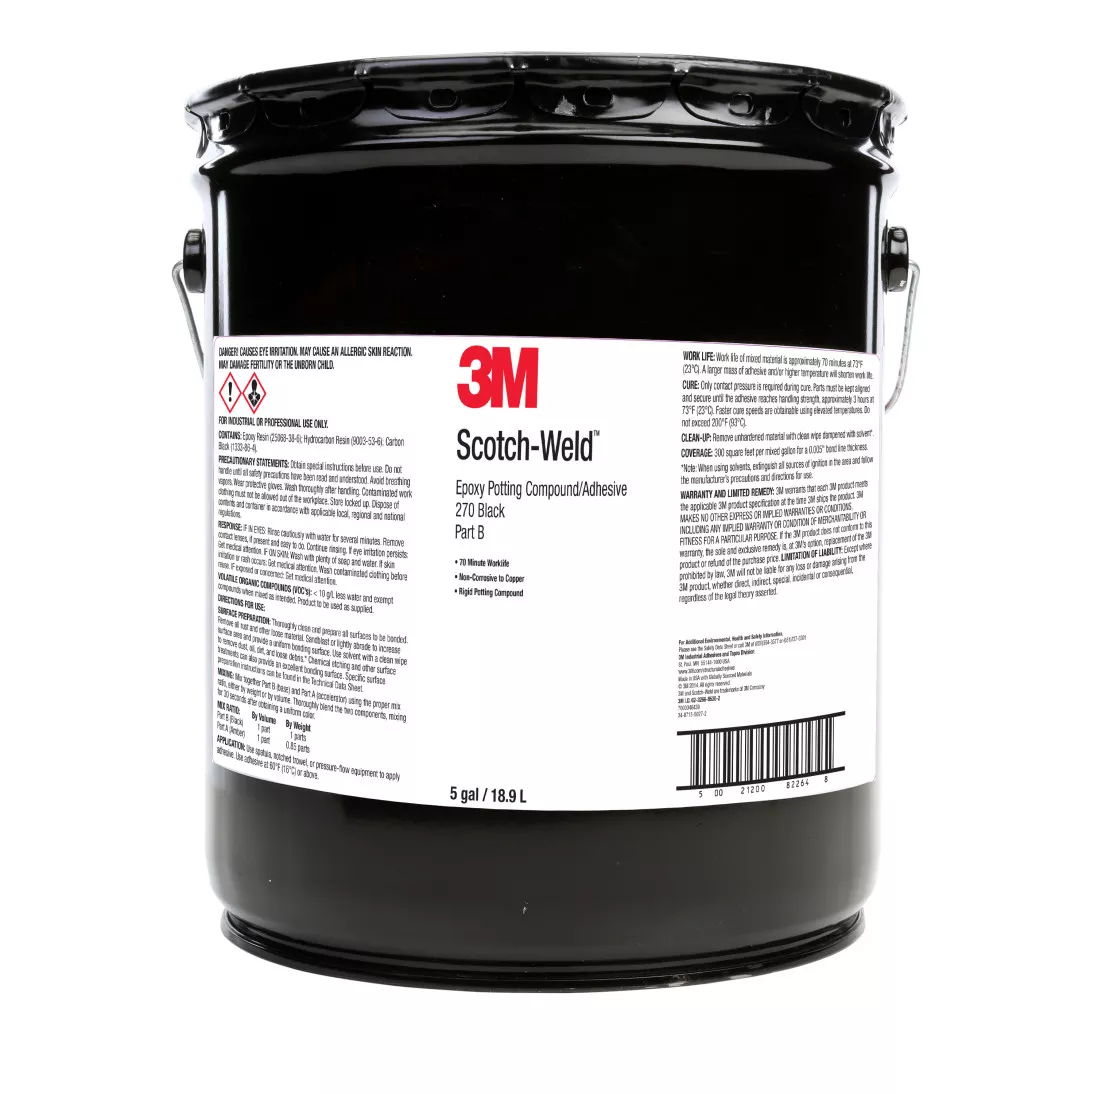 3M™ Scotch-Weld™ Epoxy Potting Compound 270, Black, Part B, 5 Gallon
Drum (Pail)